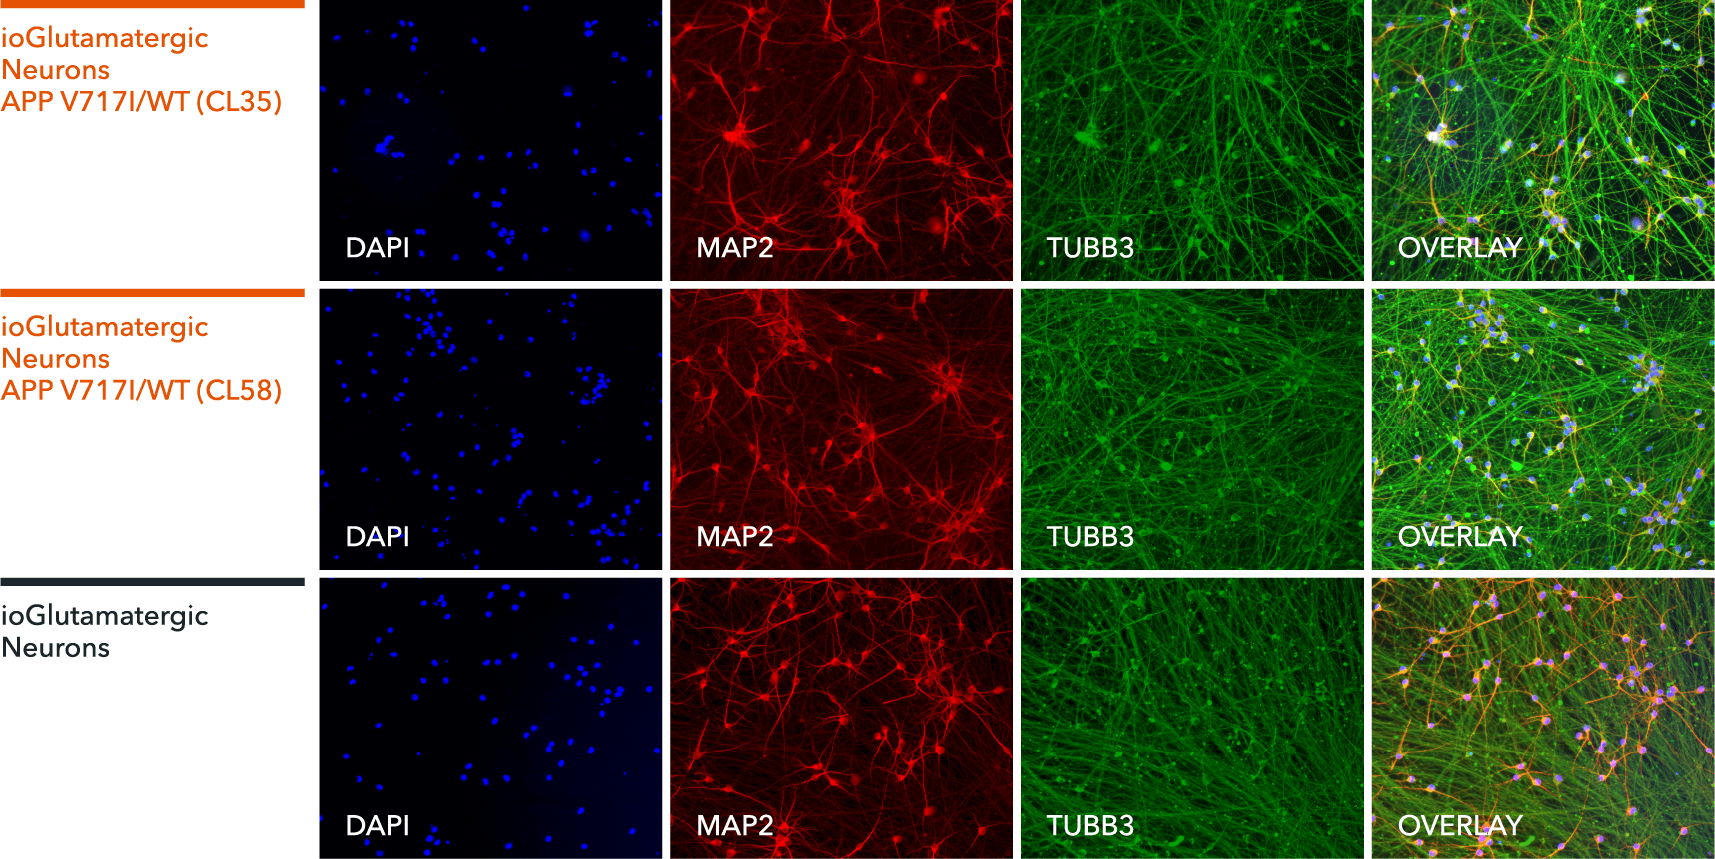 io1067-io1068-ioGlutamatergic Neurons APP-V717I-het-ICC-MAP2-TUBB3